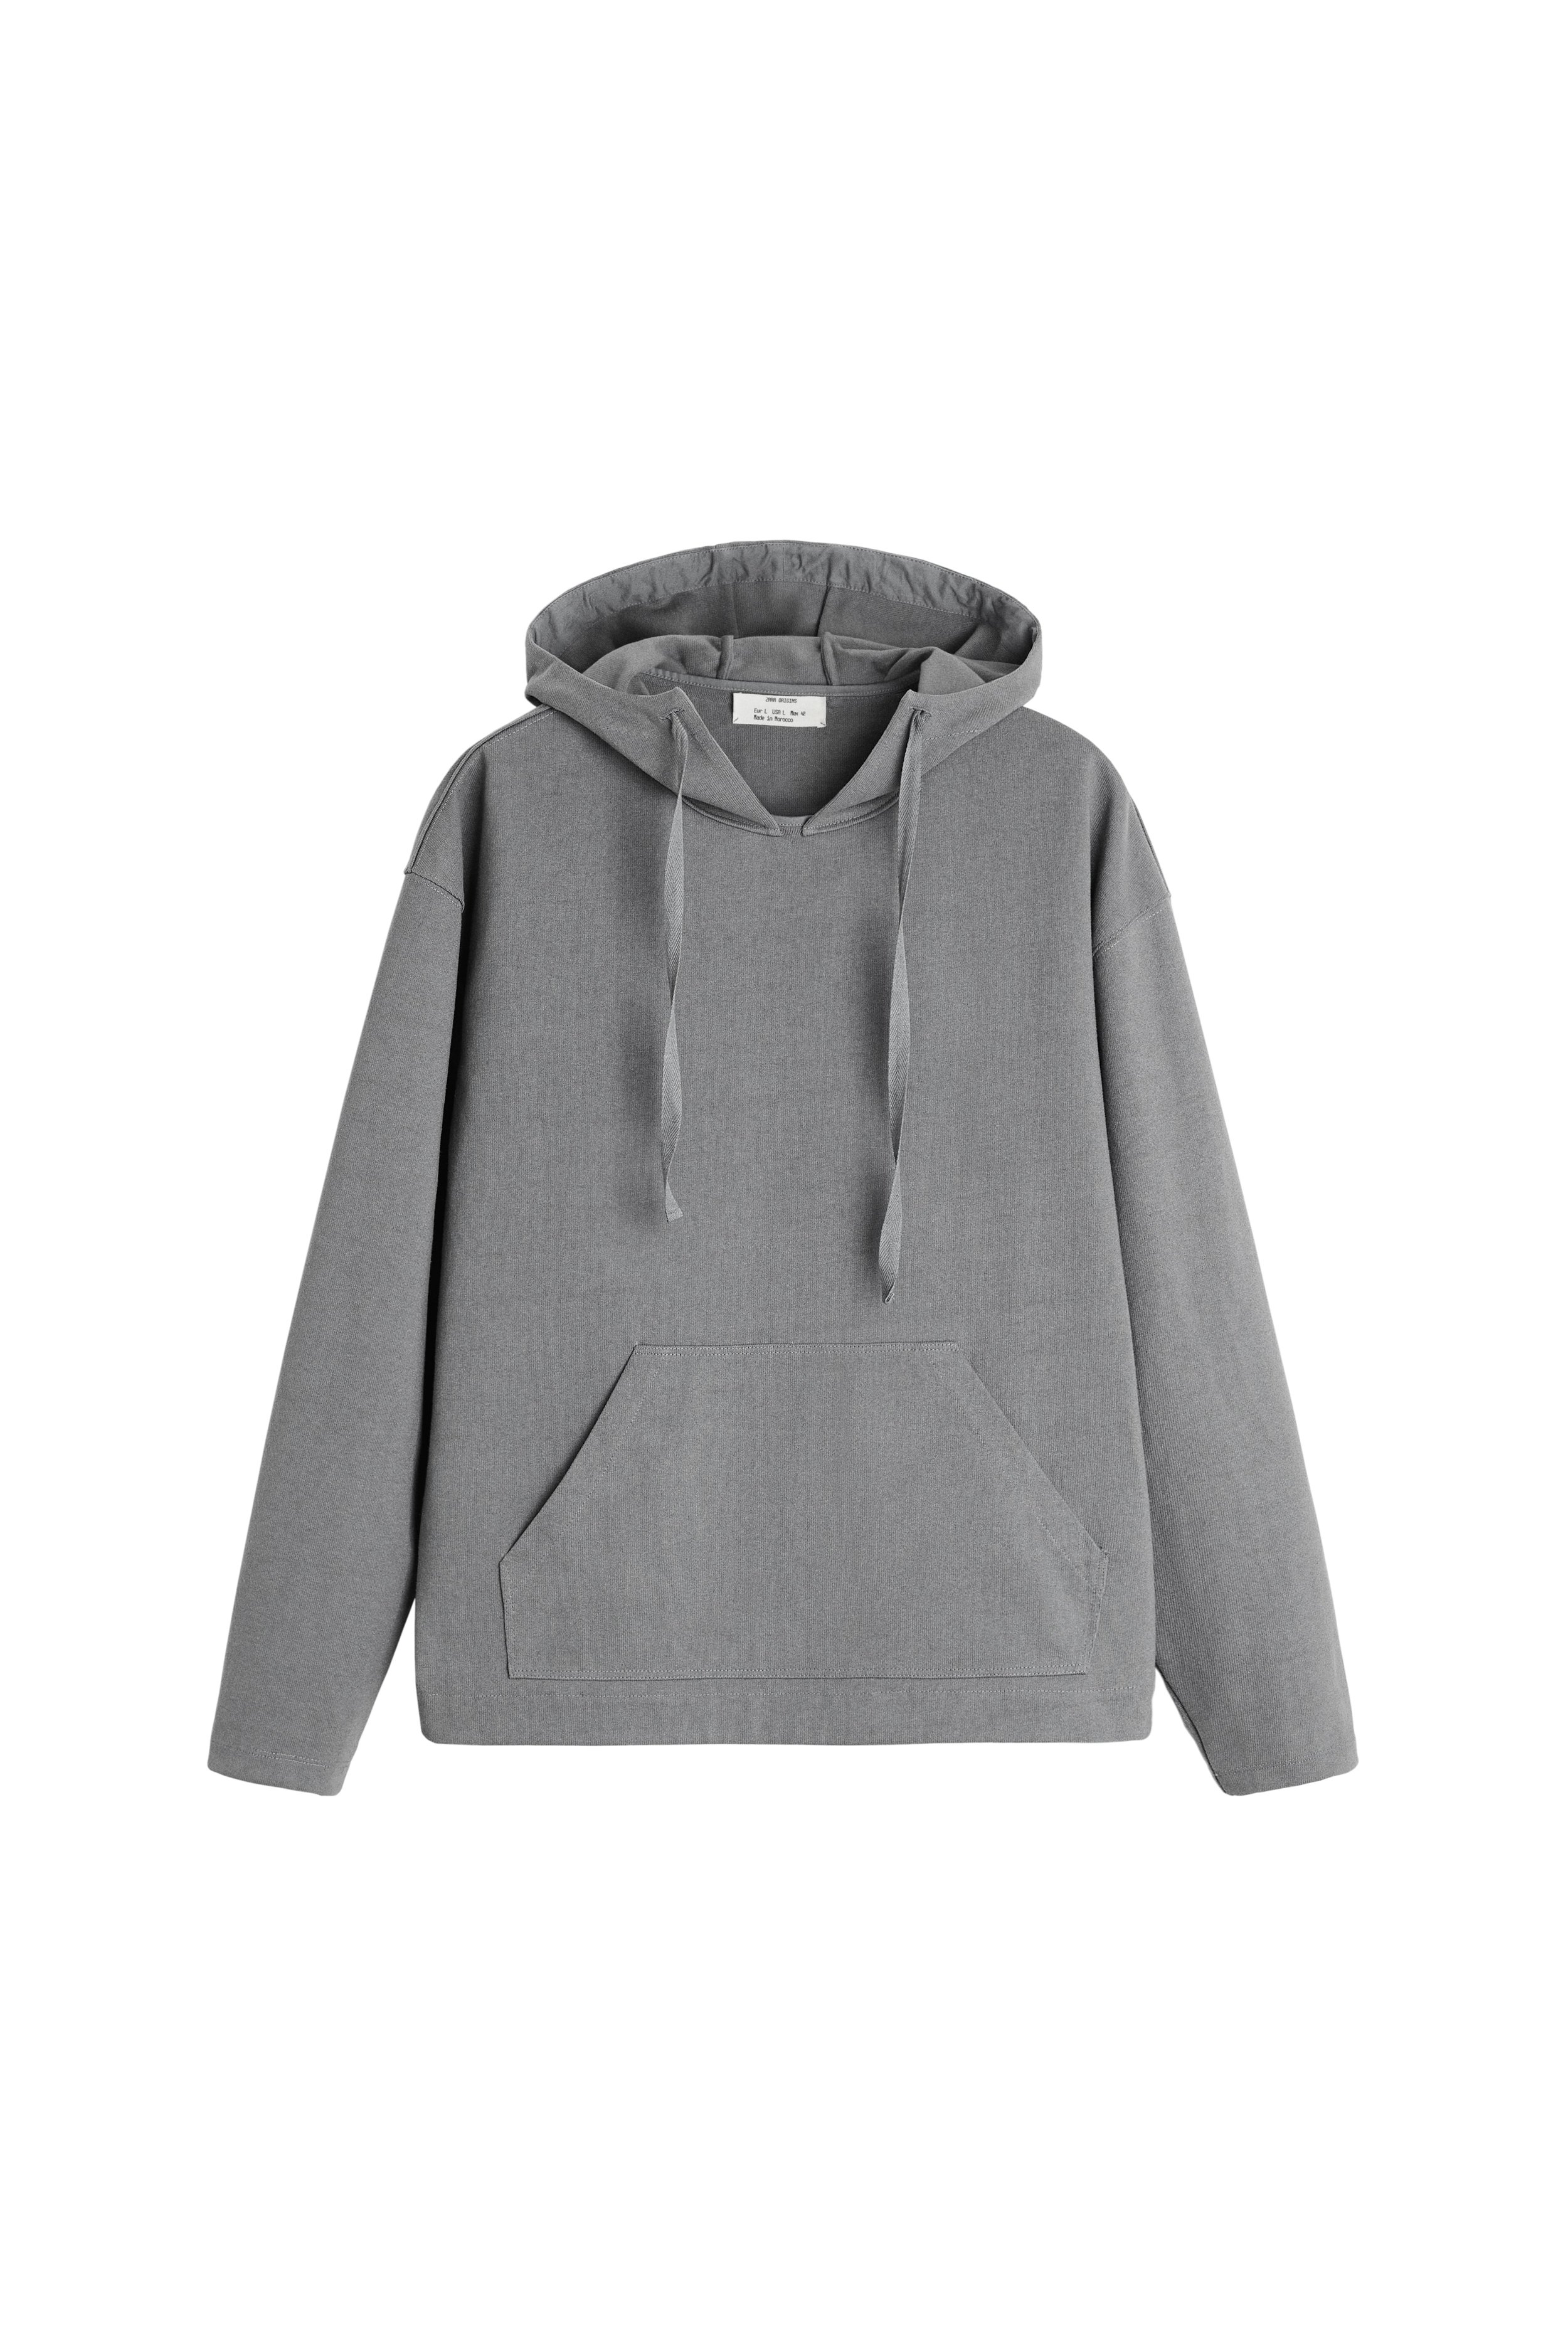 Oversized sweatshirt - ZARA faded hoodie - £49.99